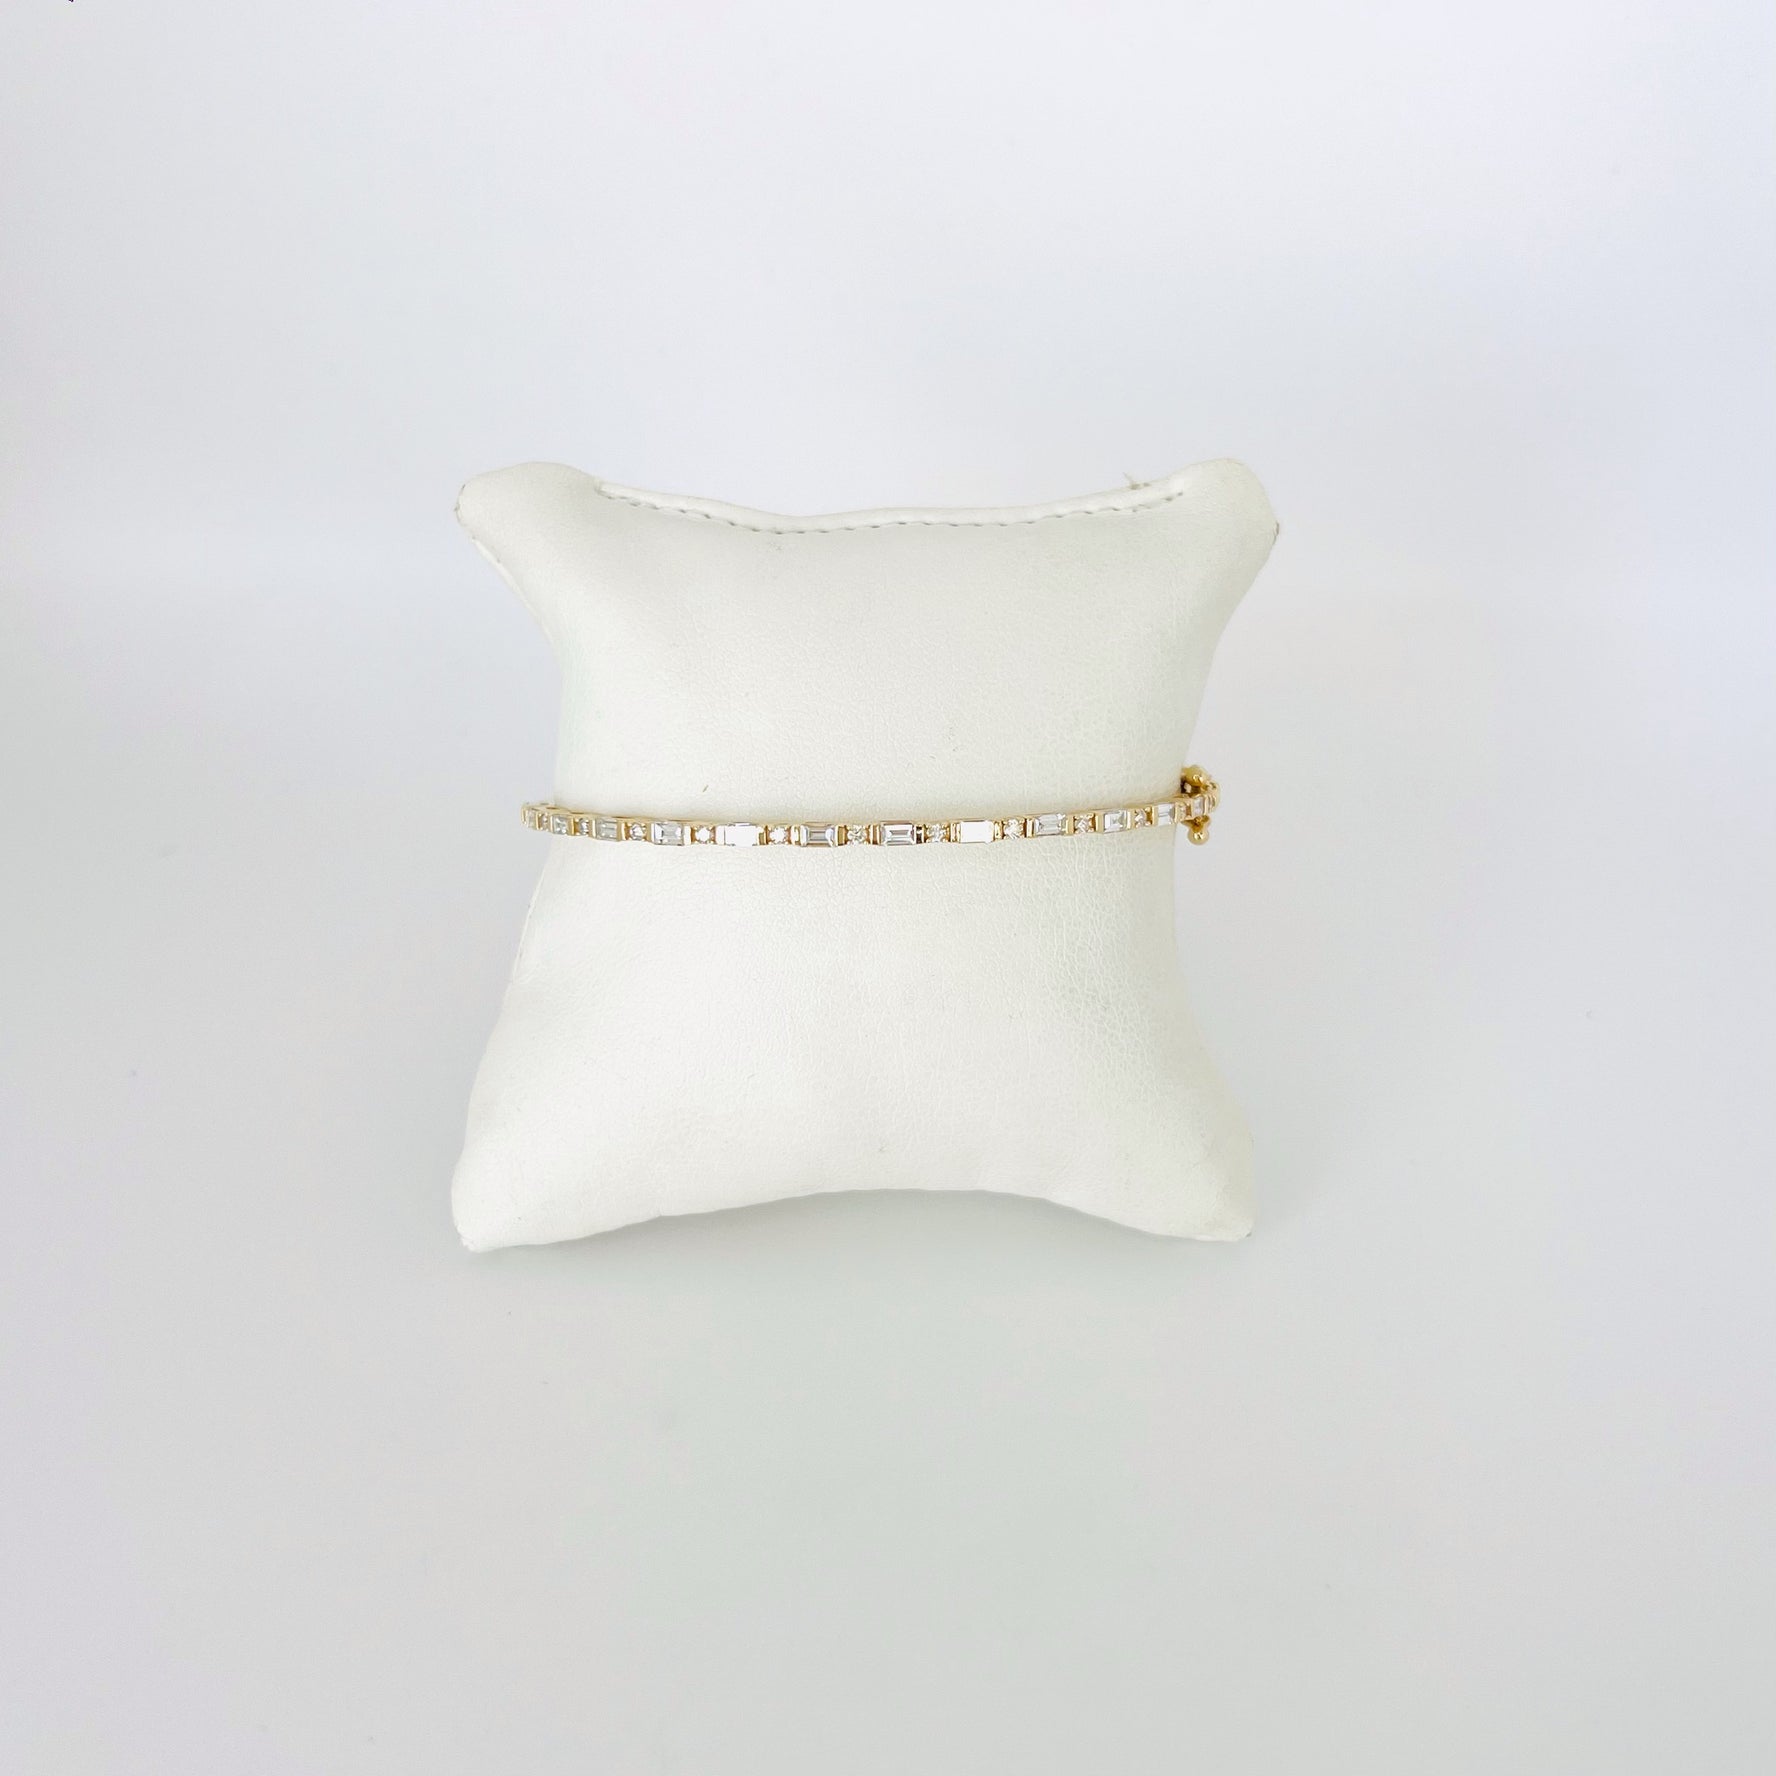 14k gold alternating round - baguette diamond bangle bracelet